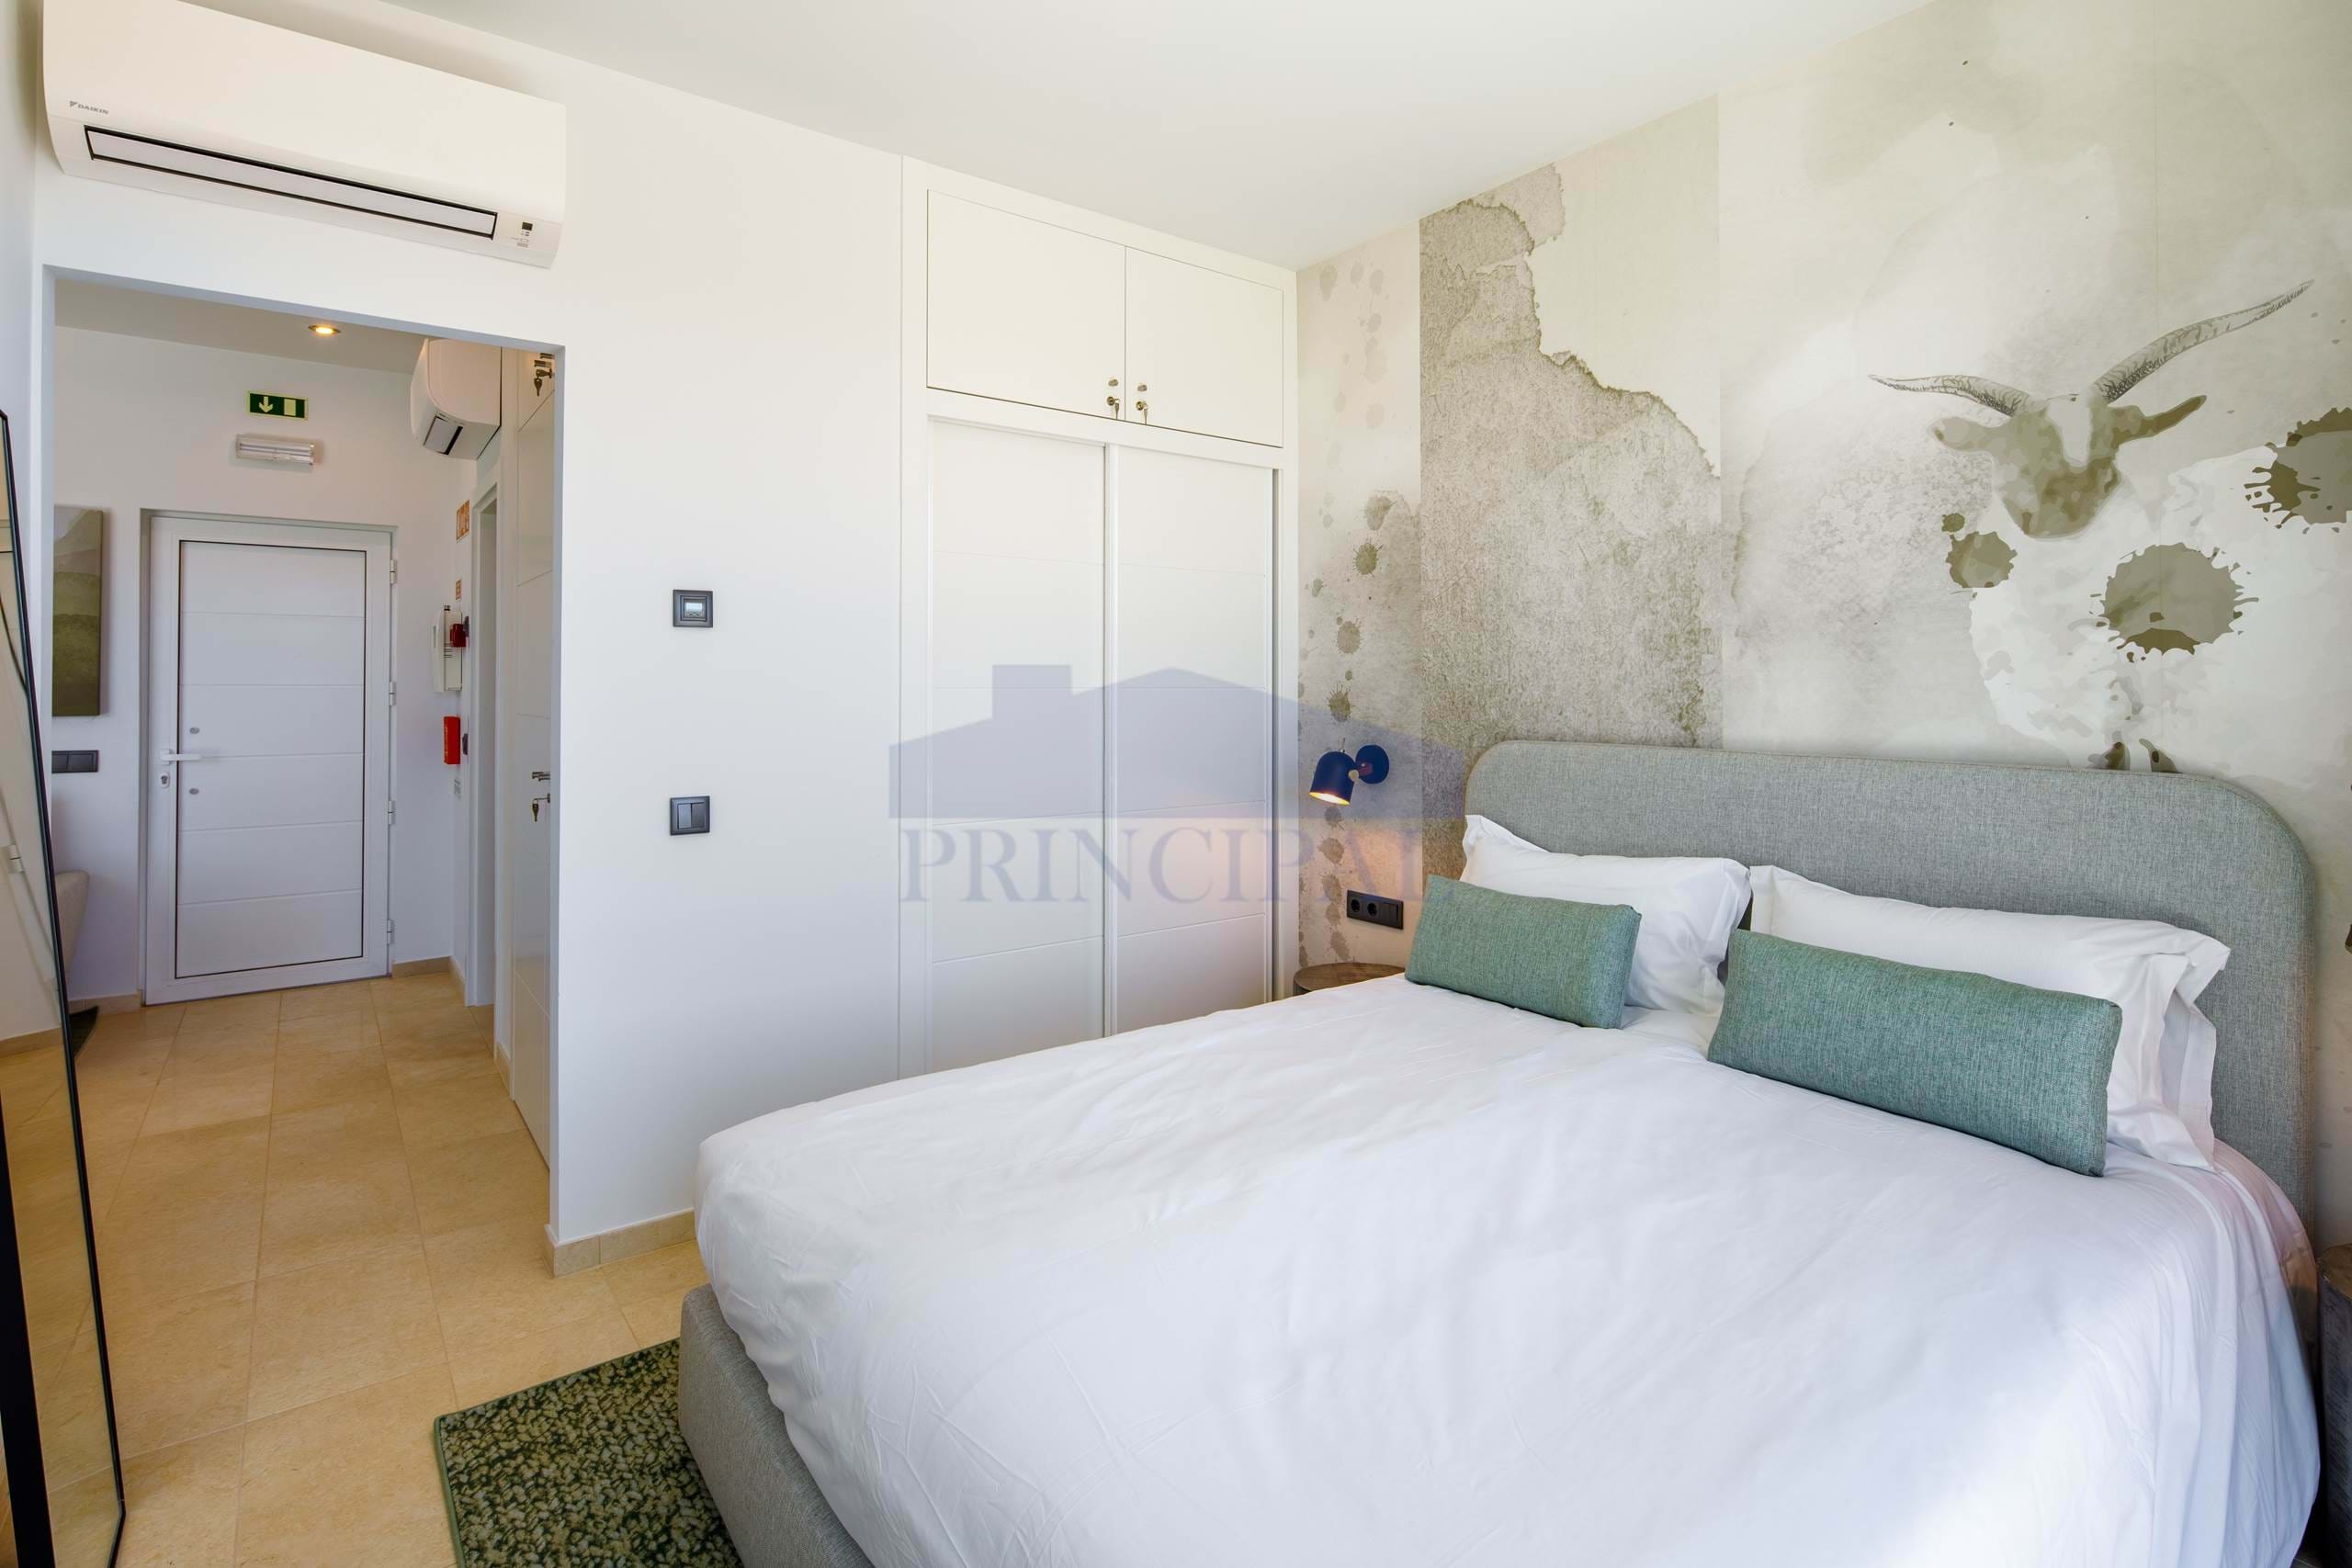 Contemporary 1 Bedroom Suites in Wine Resort